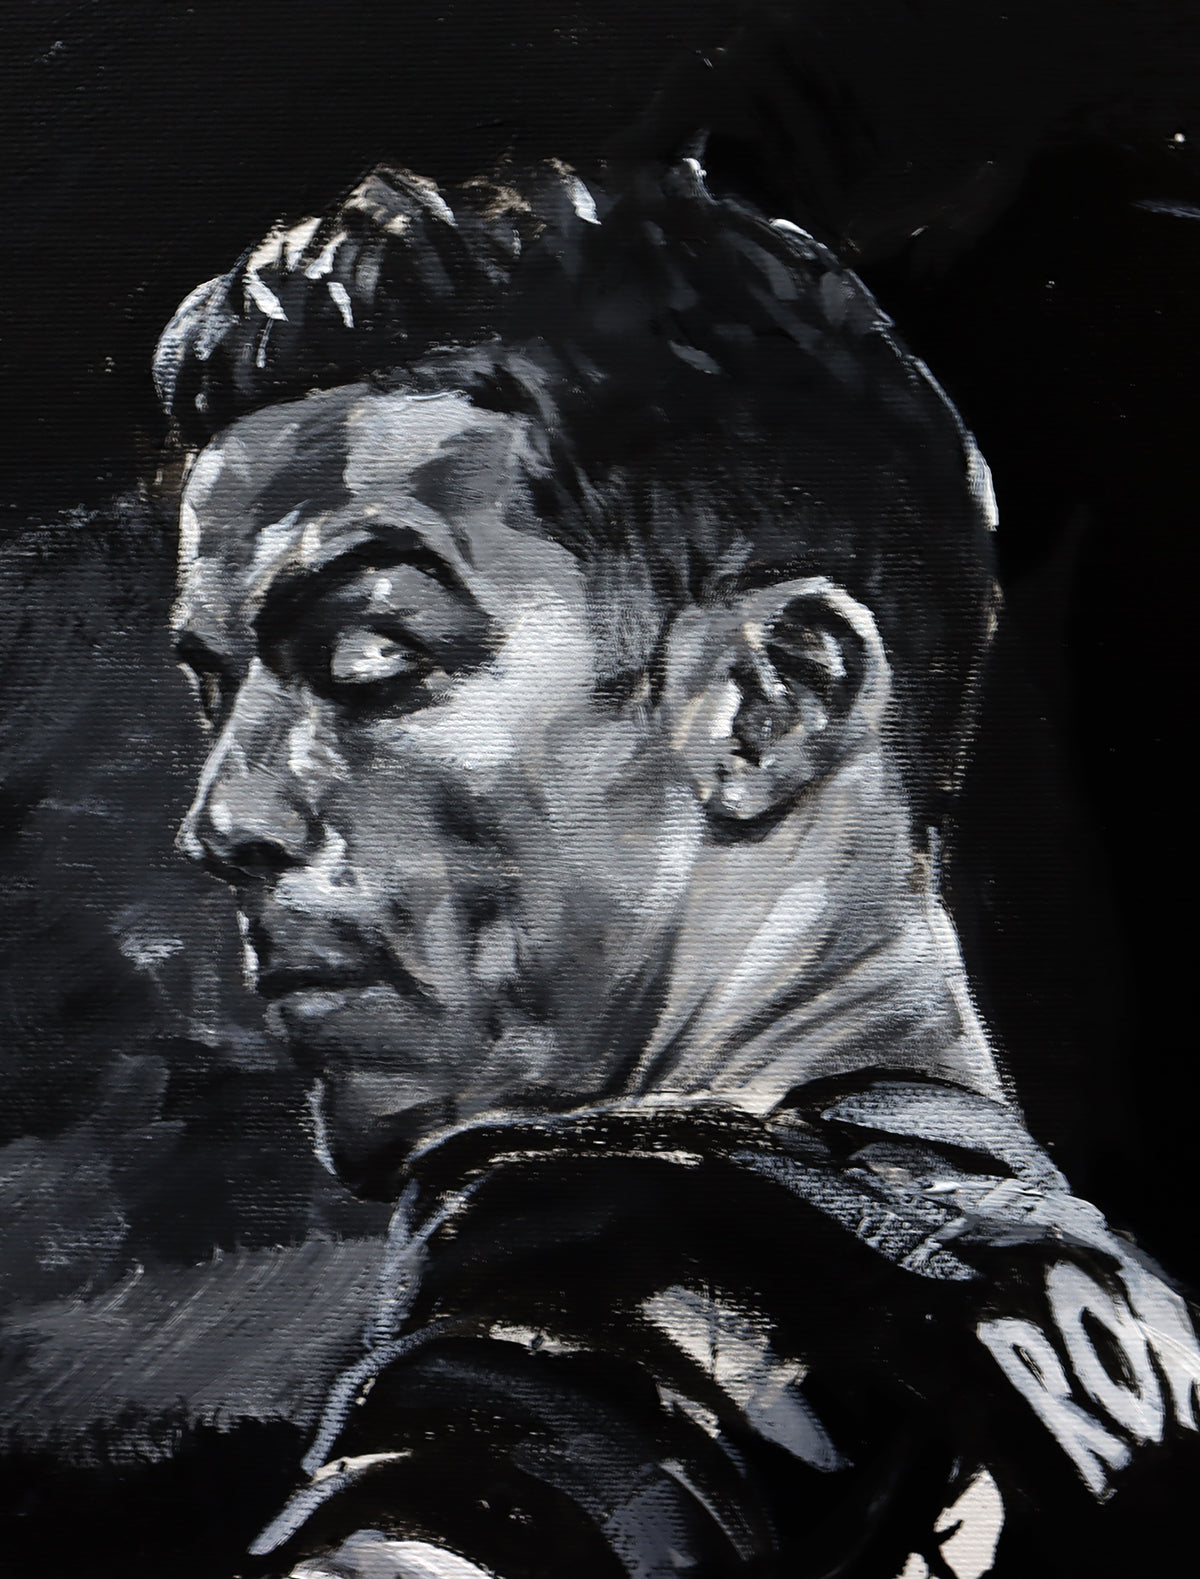 Cristiano Ronaldo - Original Painting